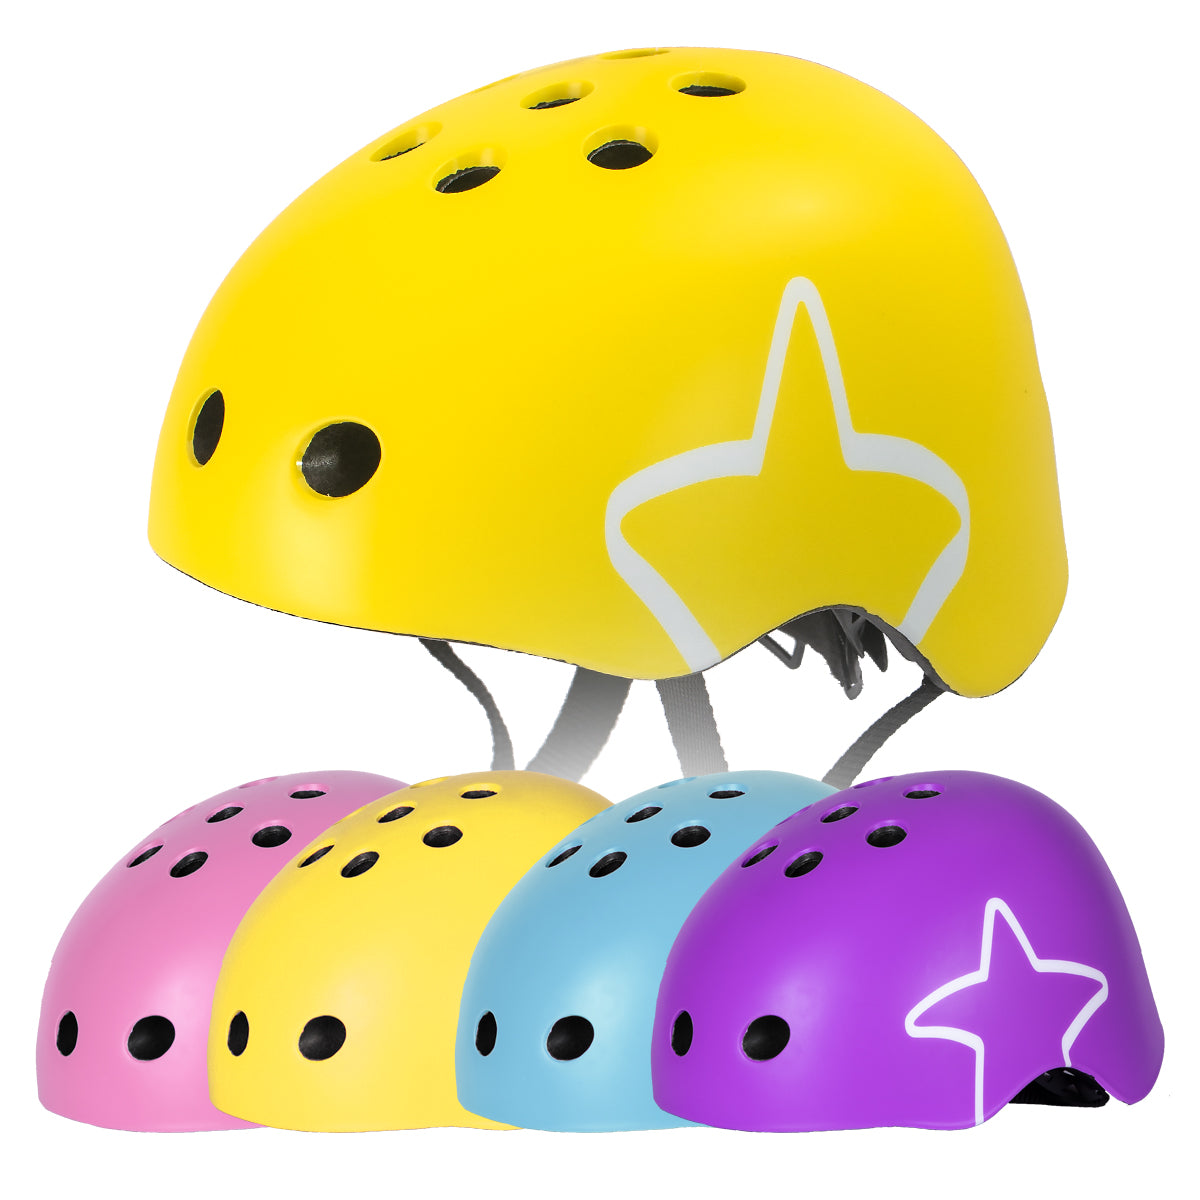 JOYSTAR Starry Kids Bike Helmet for Ages 3-8 Boys Girls